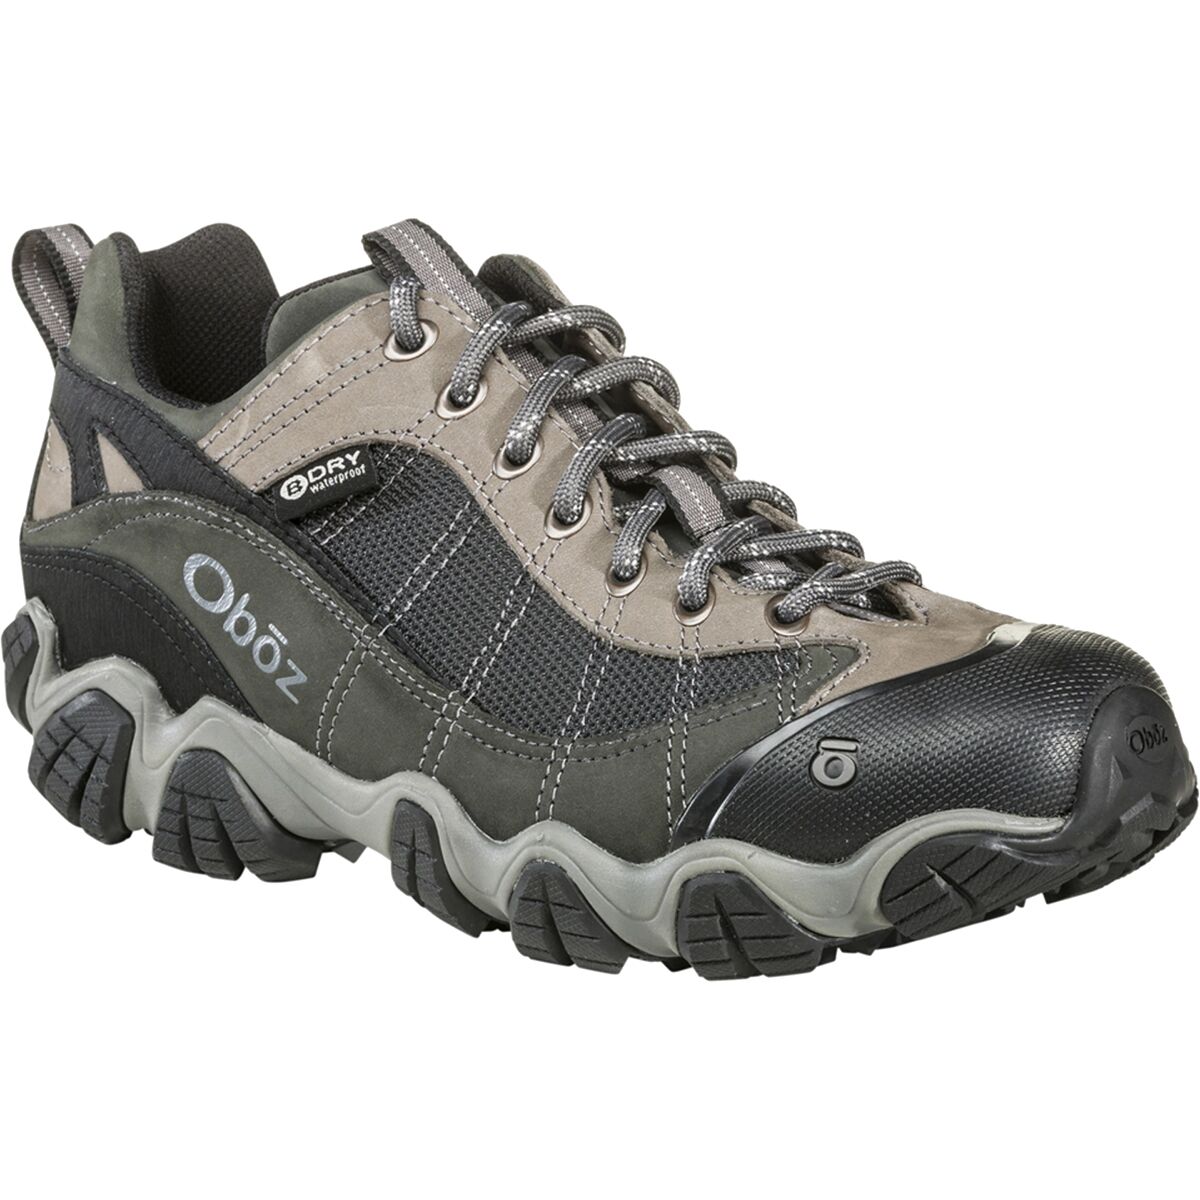 Oboz Firebrand II B-Dry Wide Hiking Shoe - Men's - Footwear